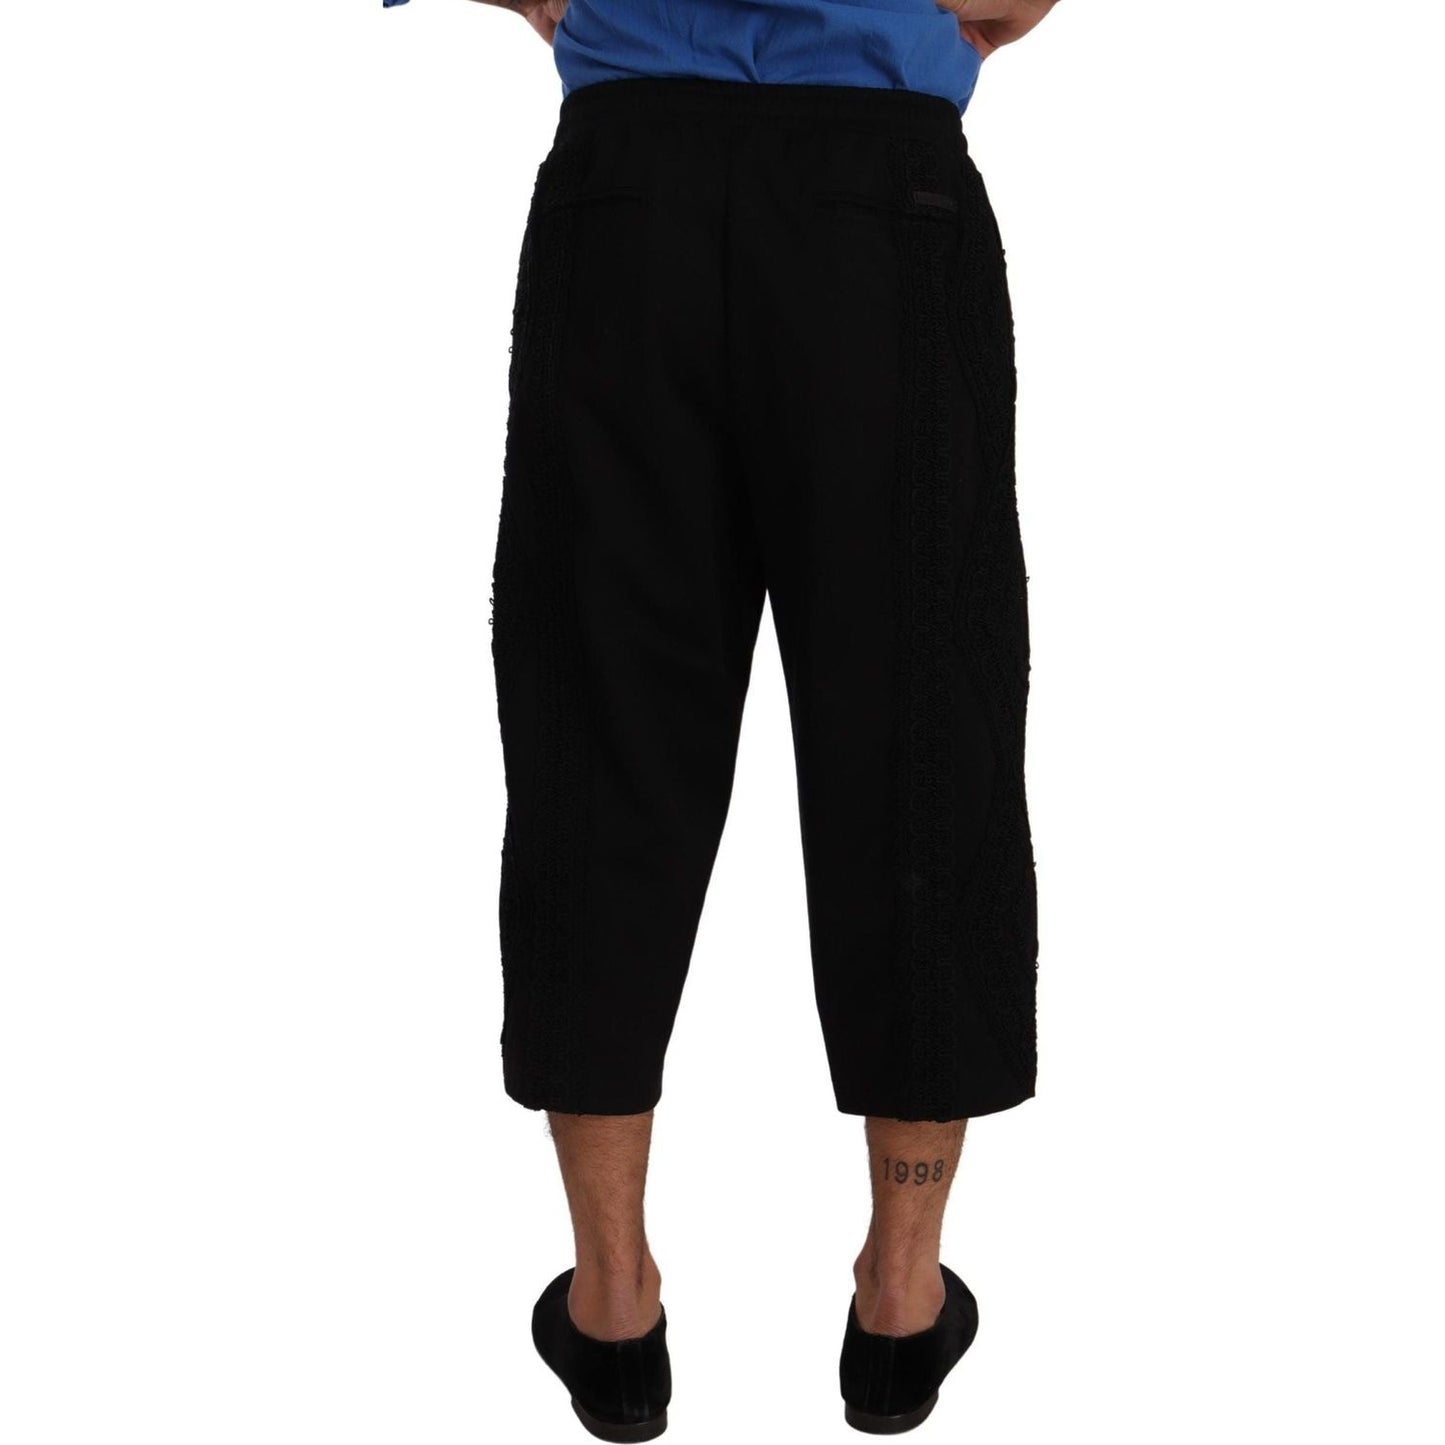 Dolce & Gabbana Elegant Black Cotton Blend Cropped Pants black-cotton-torero-cropped-short-trouser-pants